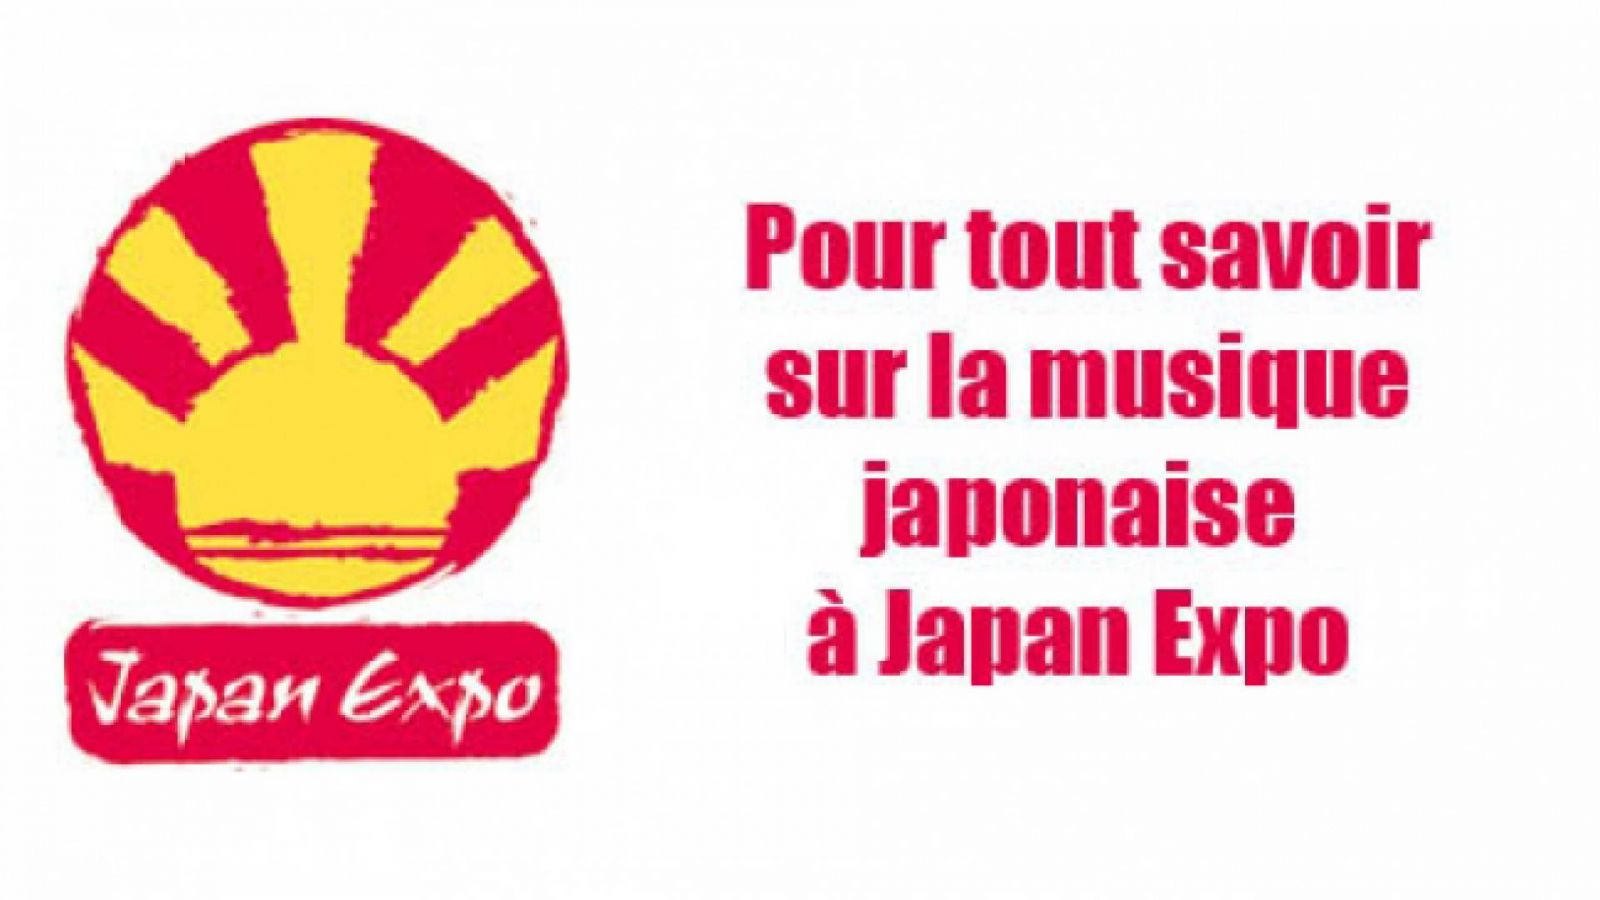 Japan Expo anuncia Natsuko Aso e C-ZONE como convidados © JAPAN EXPO